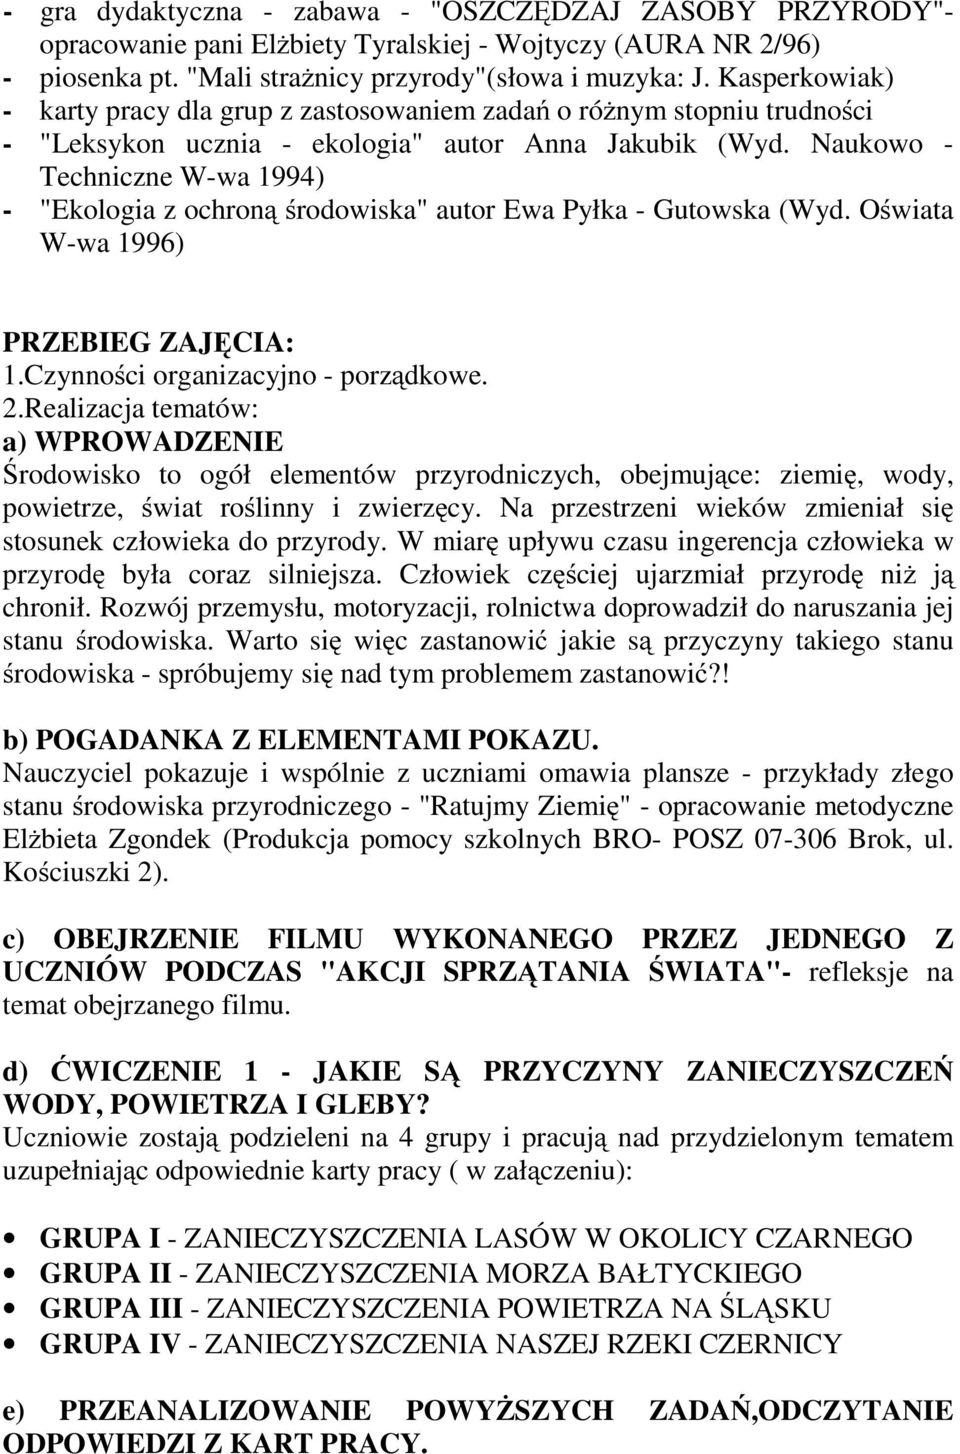 Naukowo - Techniczne W-wa 1994) - "Ekologia z ochroną środowiska" autor Ewa Pyłka - Gutowska (Wyd. Oświata W-wa 1996) PRZEBIEG ZAJĘCIA: 1.Czynności organizacyjno - porządkowe. 2.